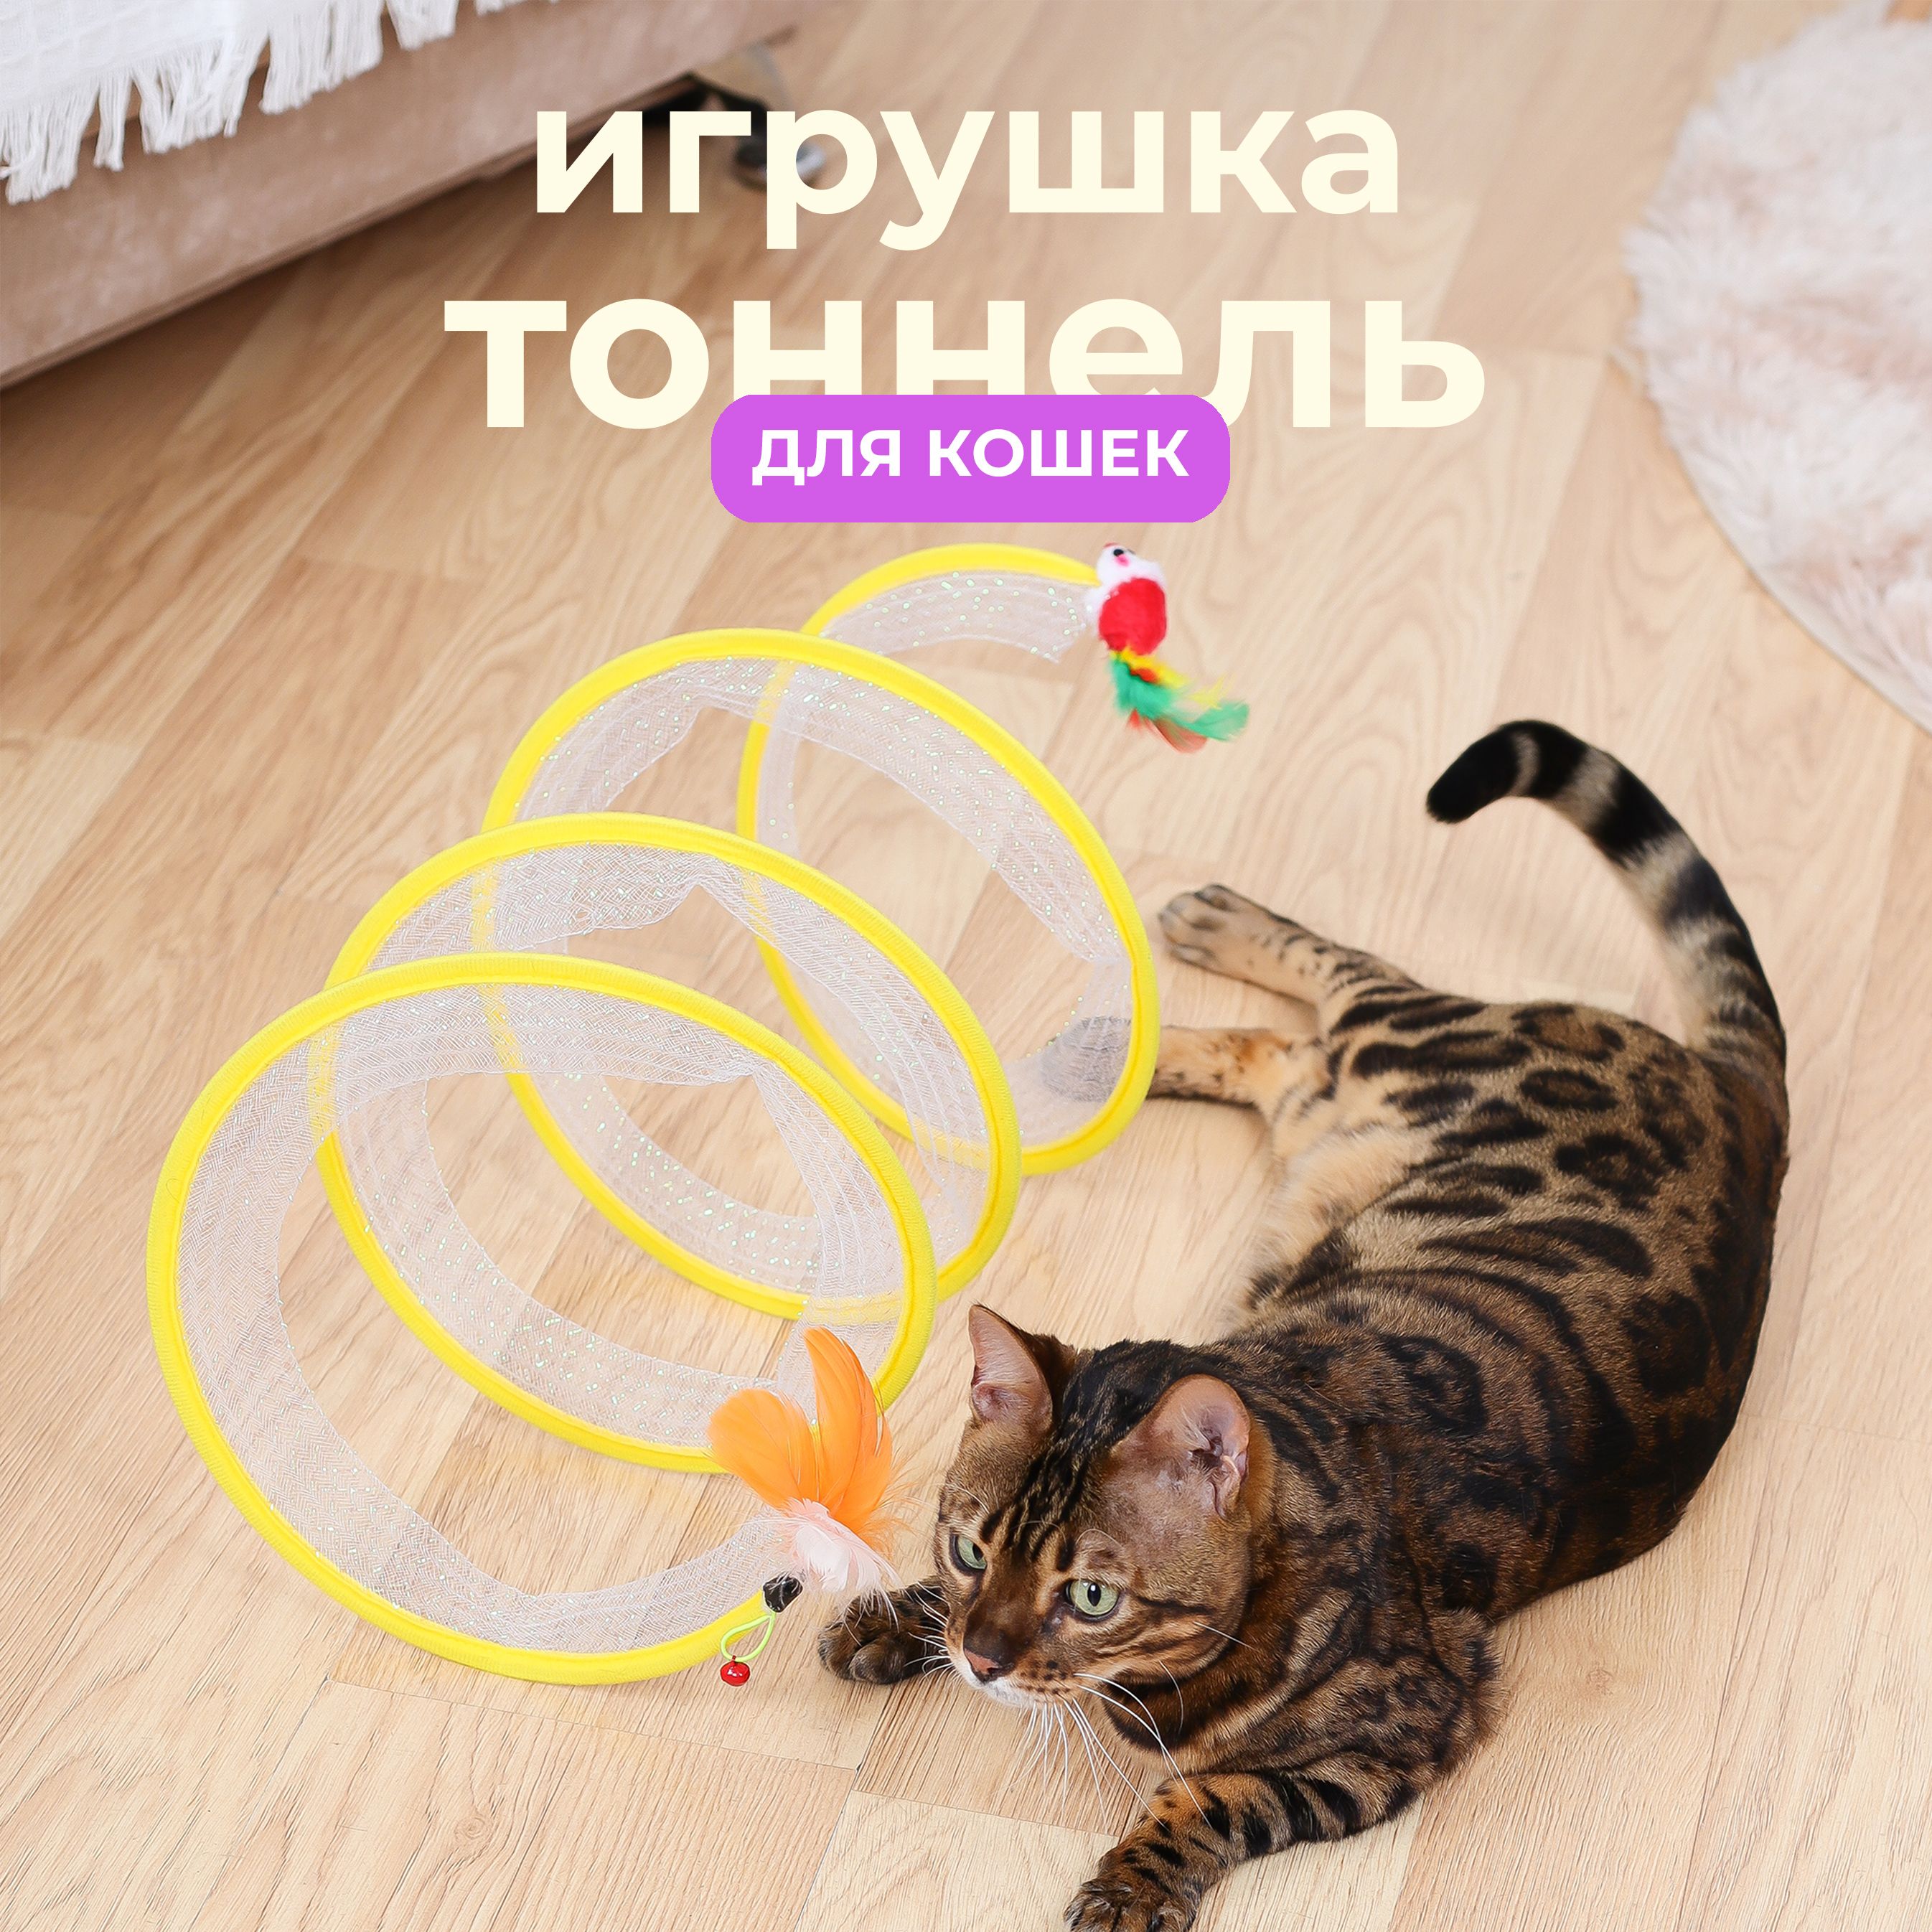 Как сделать игрушку для котенка своими руками: пошаговая инструкция